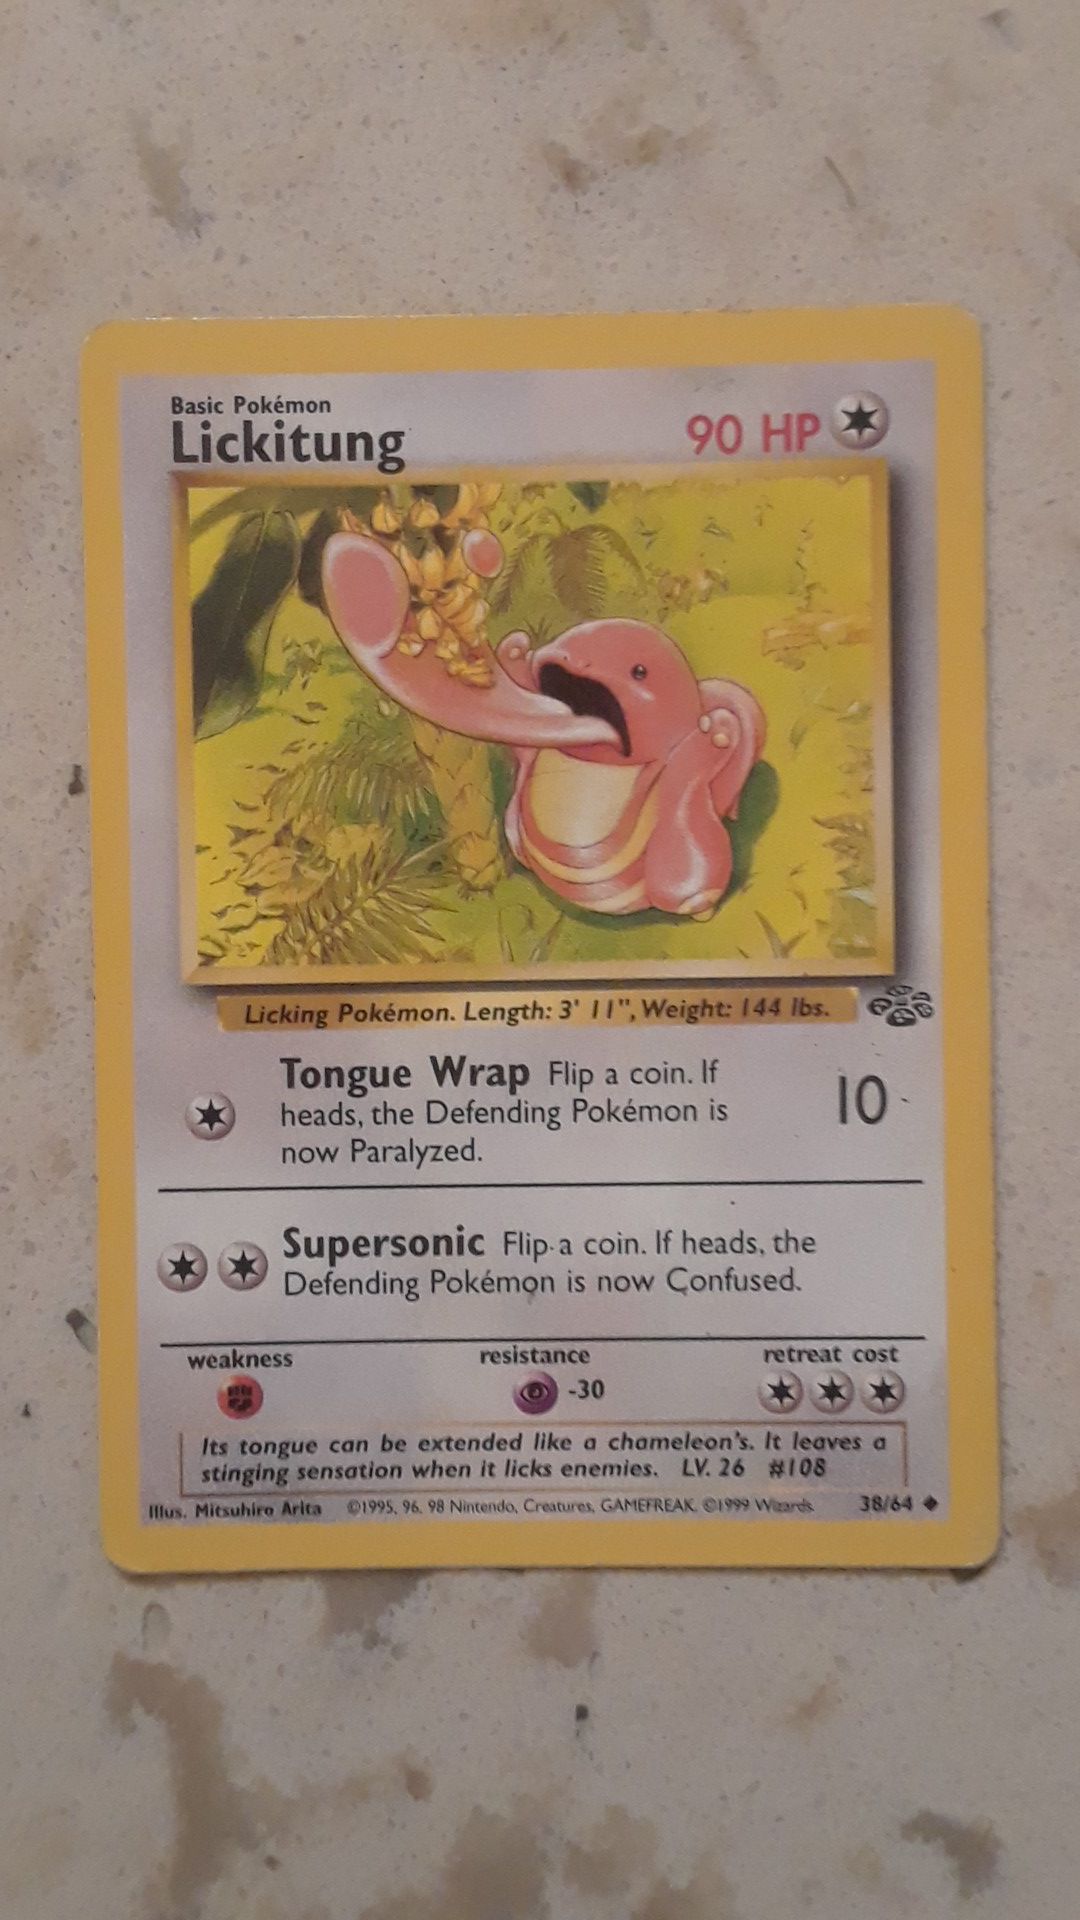 1st Edition 1999 Pokemon Jungle Set Lickitung 38/64